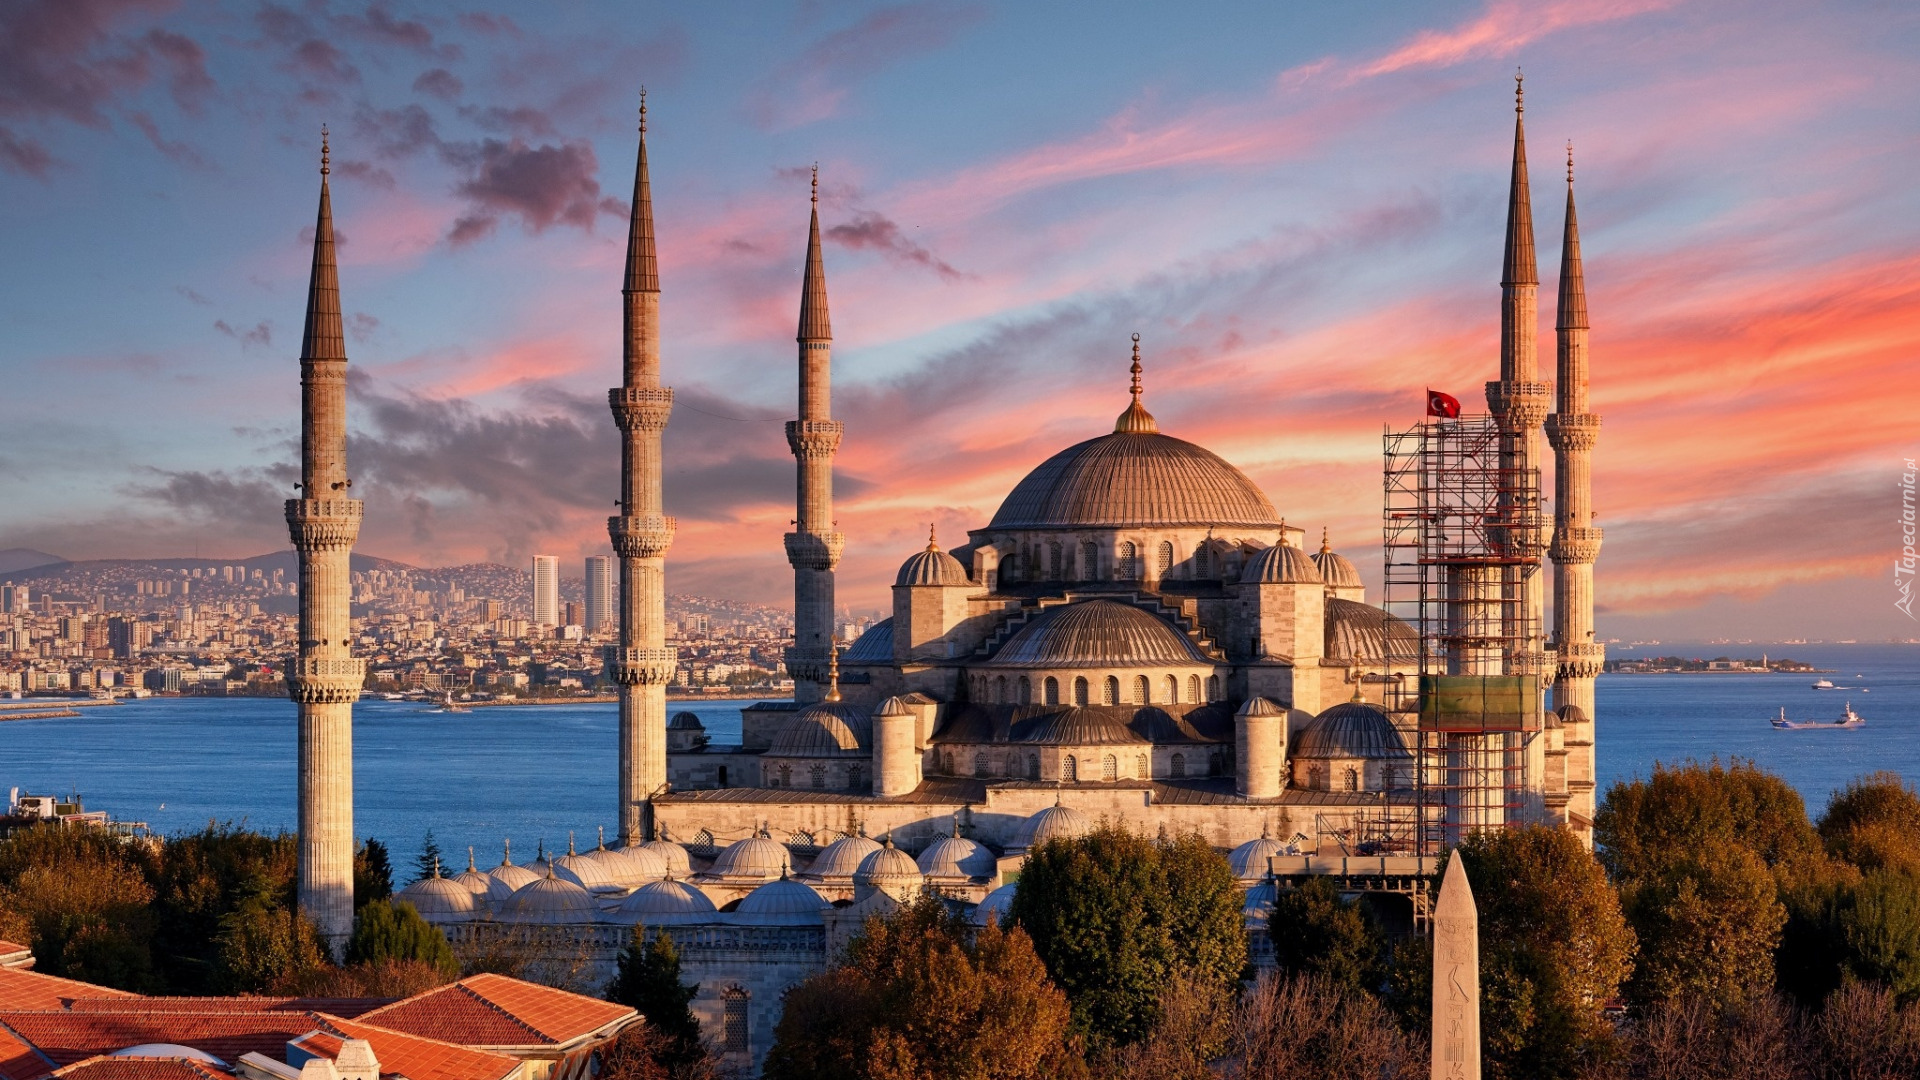 Turcja, Stambuł, Meczet Sułtana Ahmeda, Błękitny Meczet